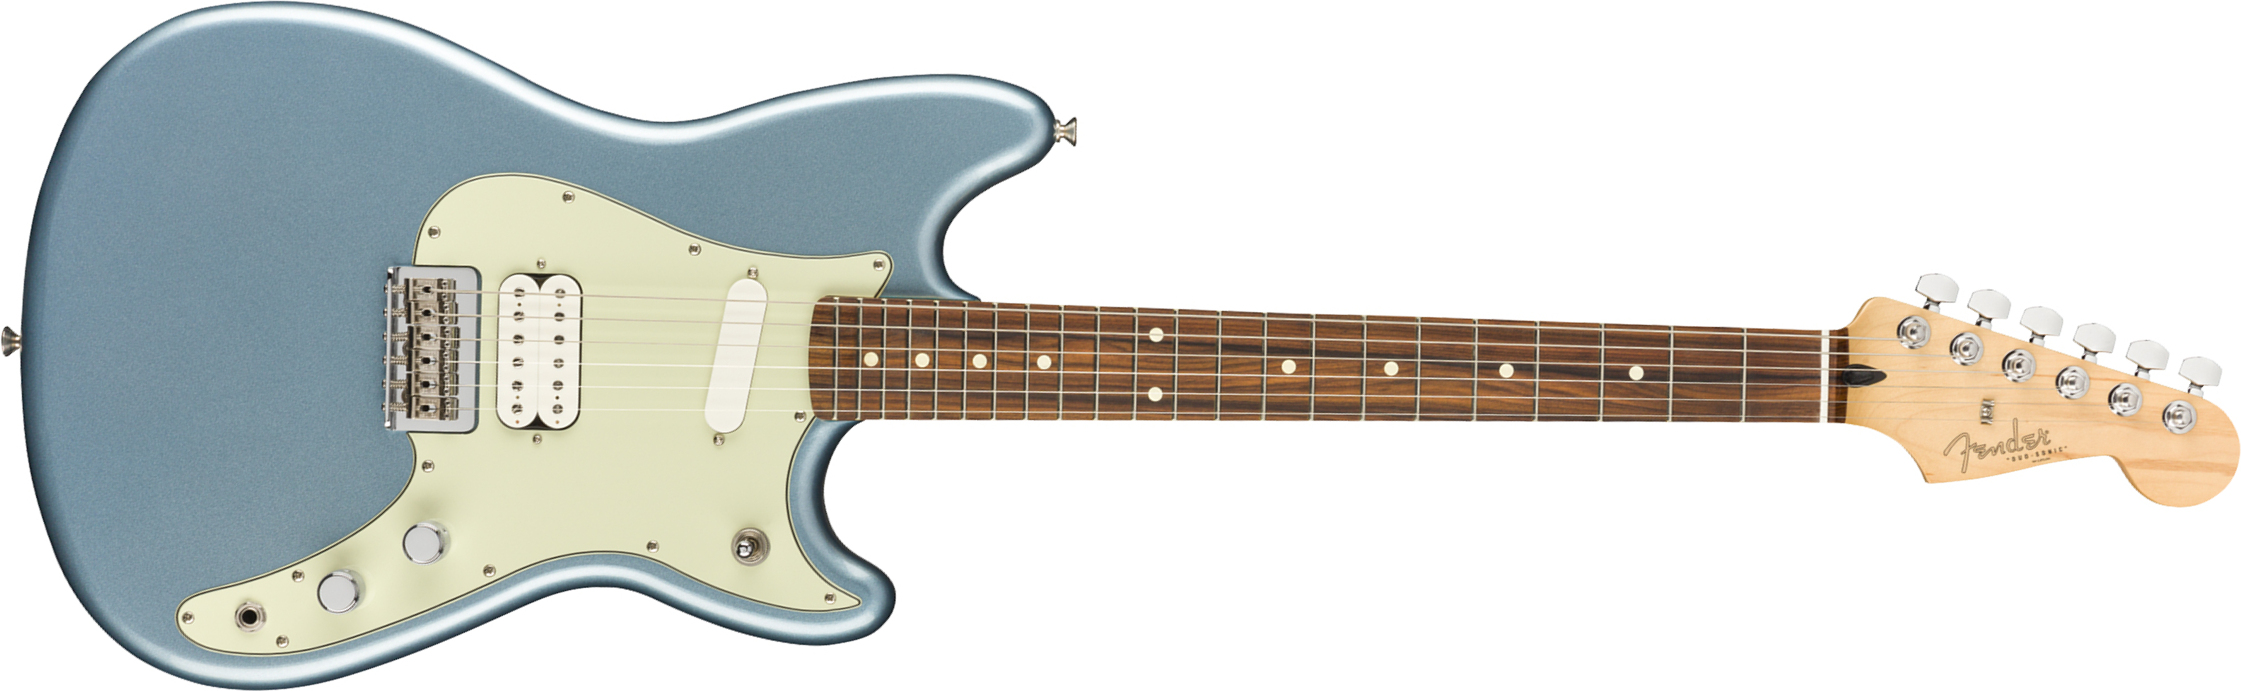 Fender Duo-sonic Player Hs Ht Pf - Ice Blue Metallic - Retro-rock elektrische gitaar - Main picture